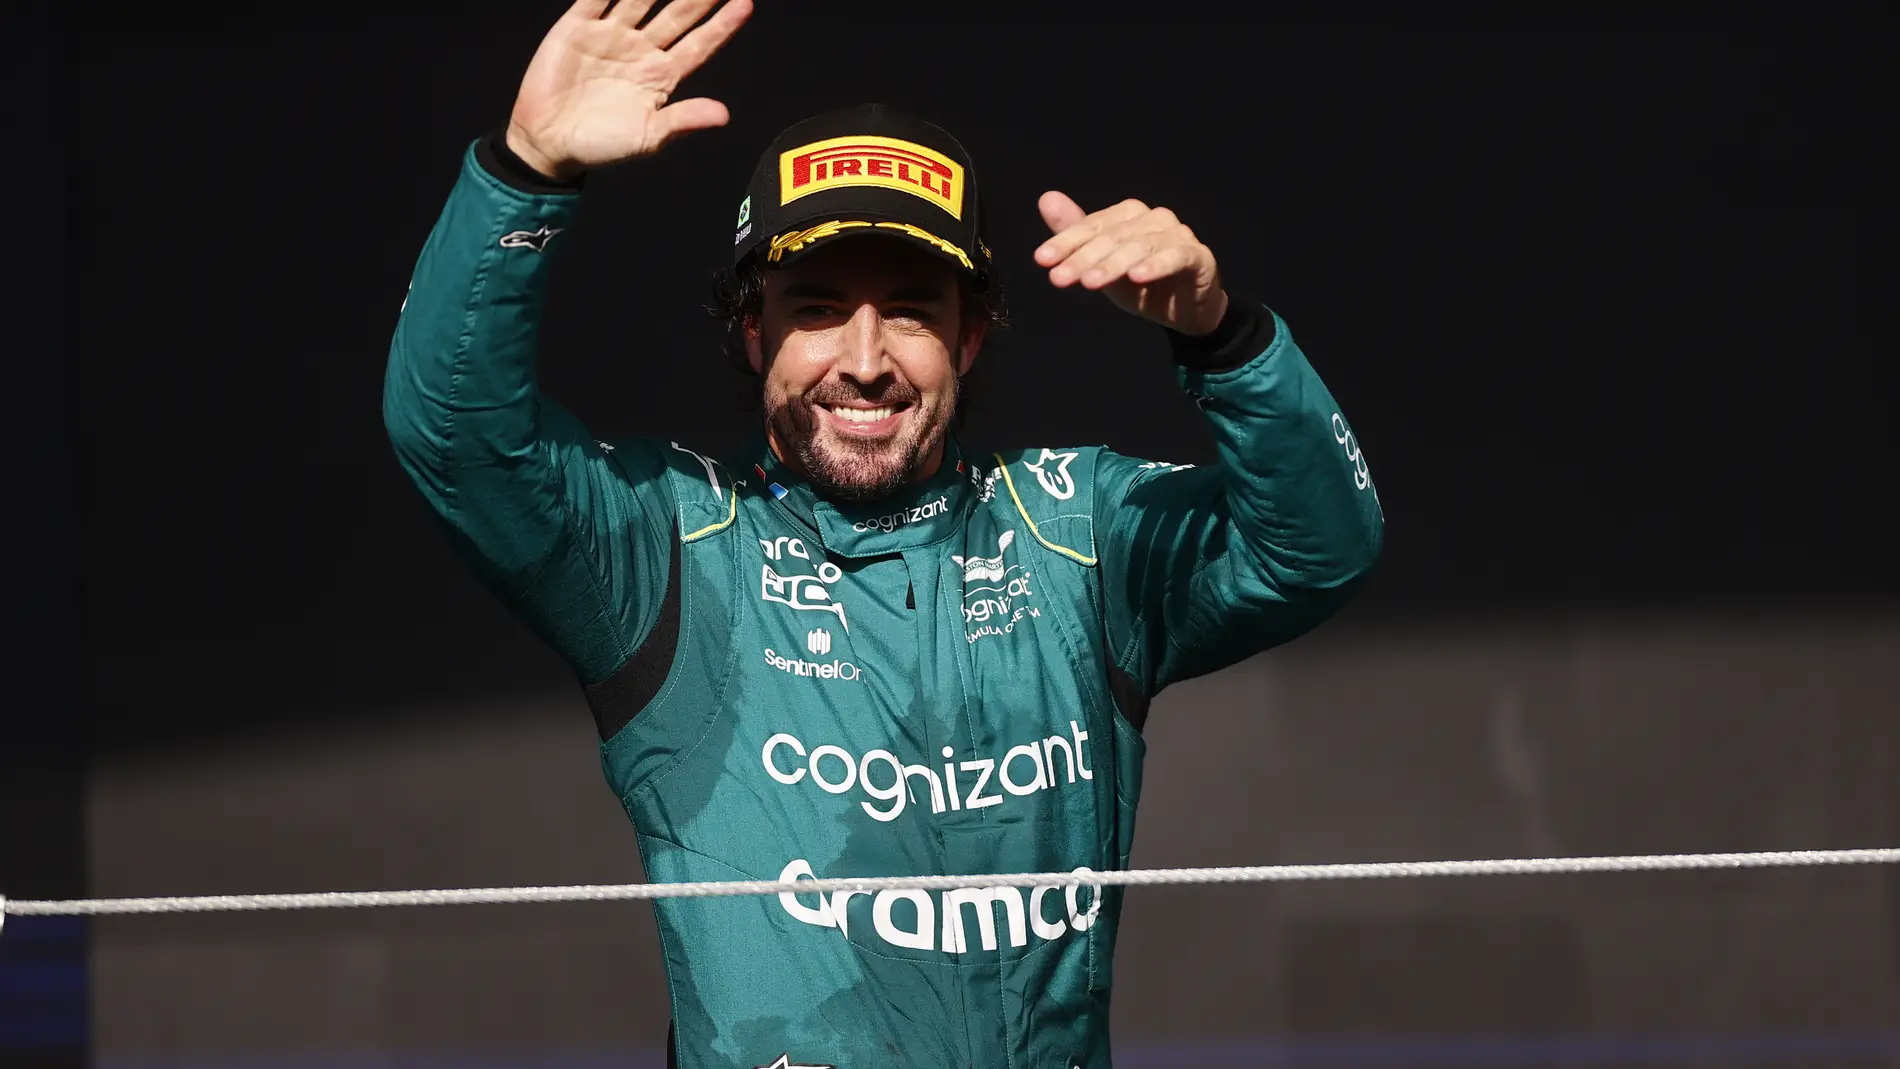 Alonso señala el detonante que puede significar su retirada de la Fórmula 1